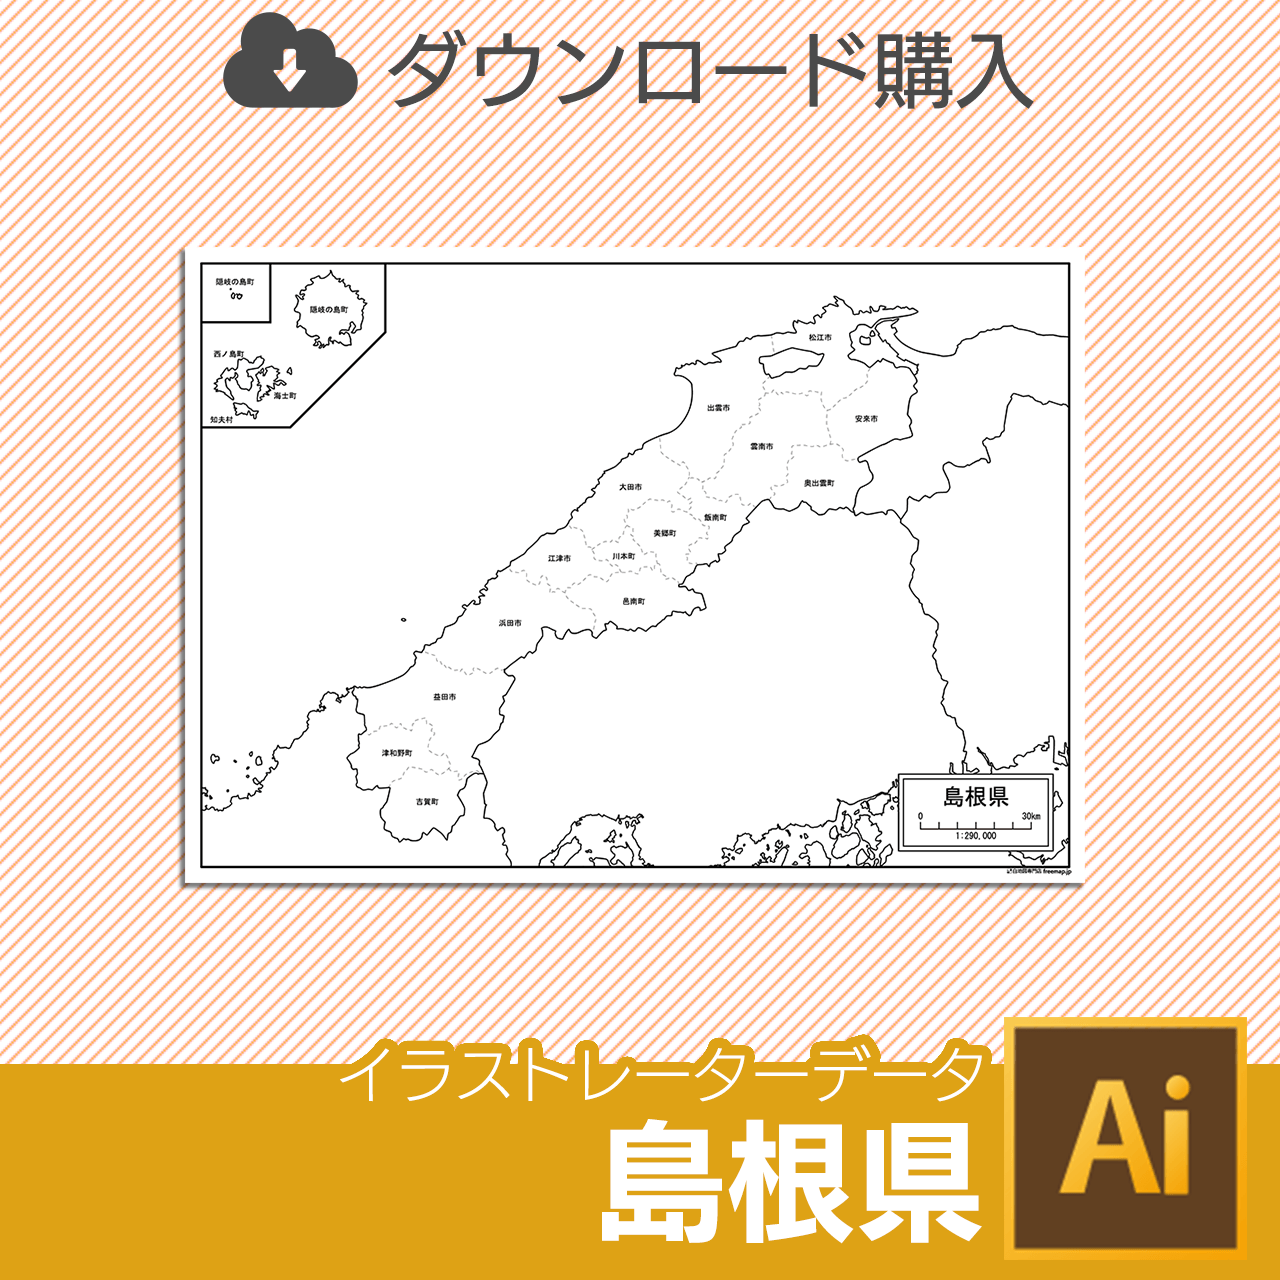 島根県の白地図データのサムネイル画像